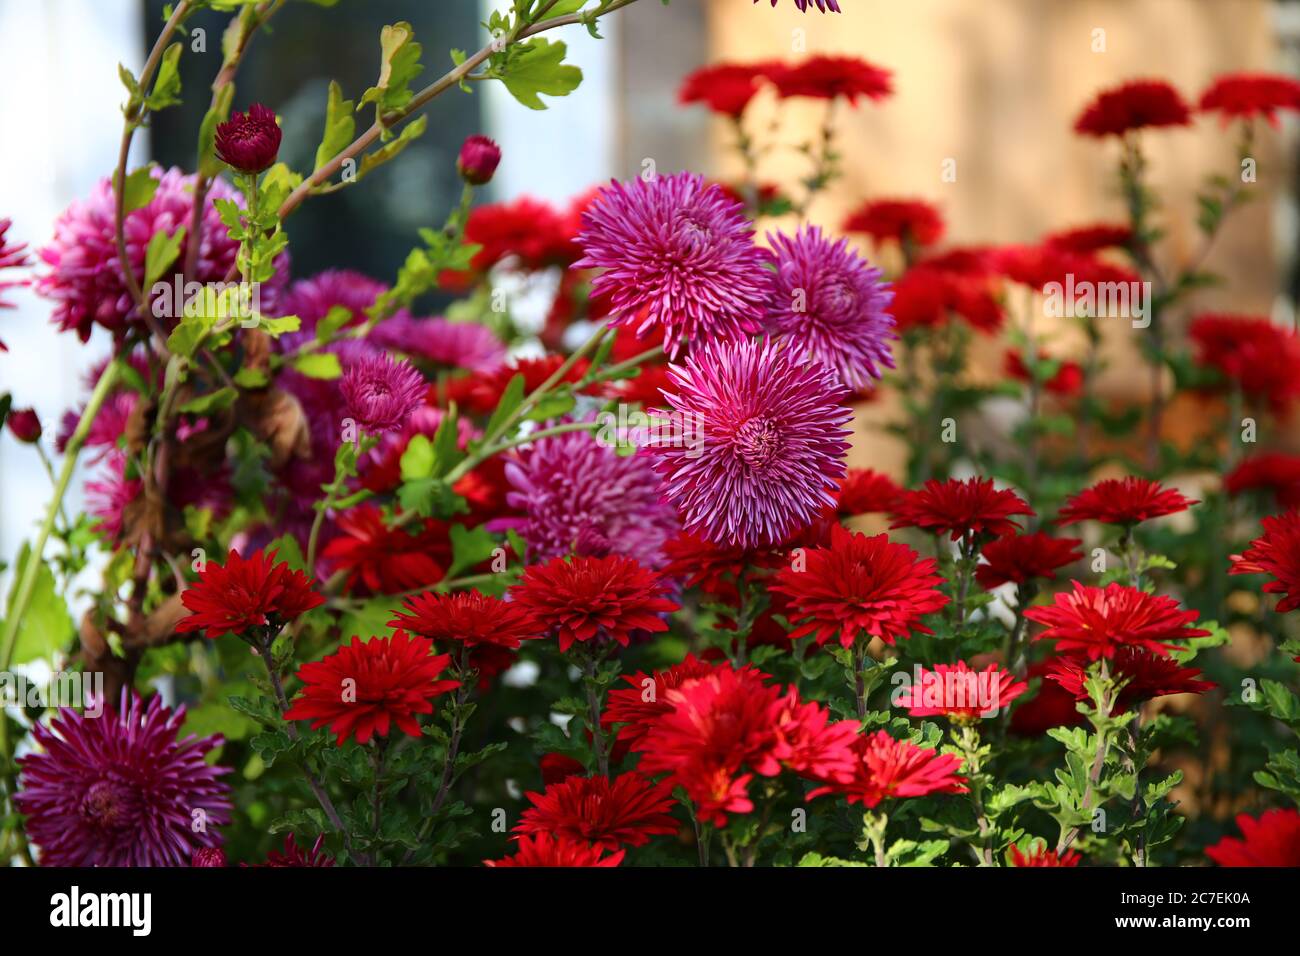 Red chrysanthemum Stock Photo